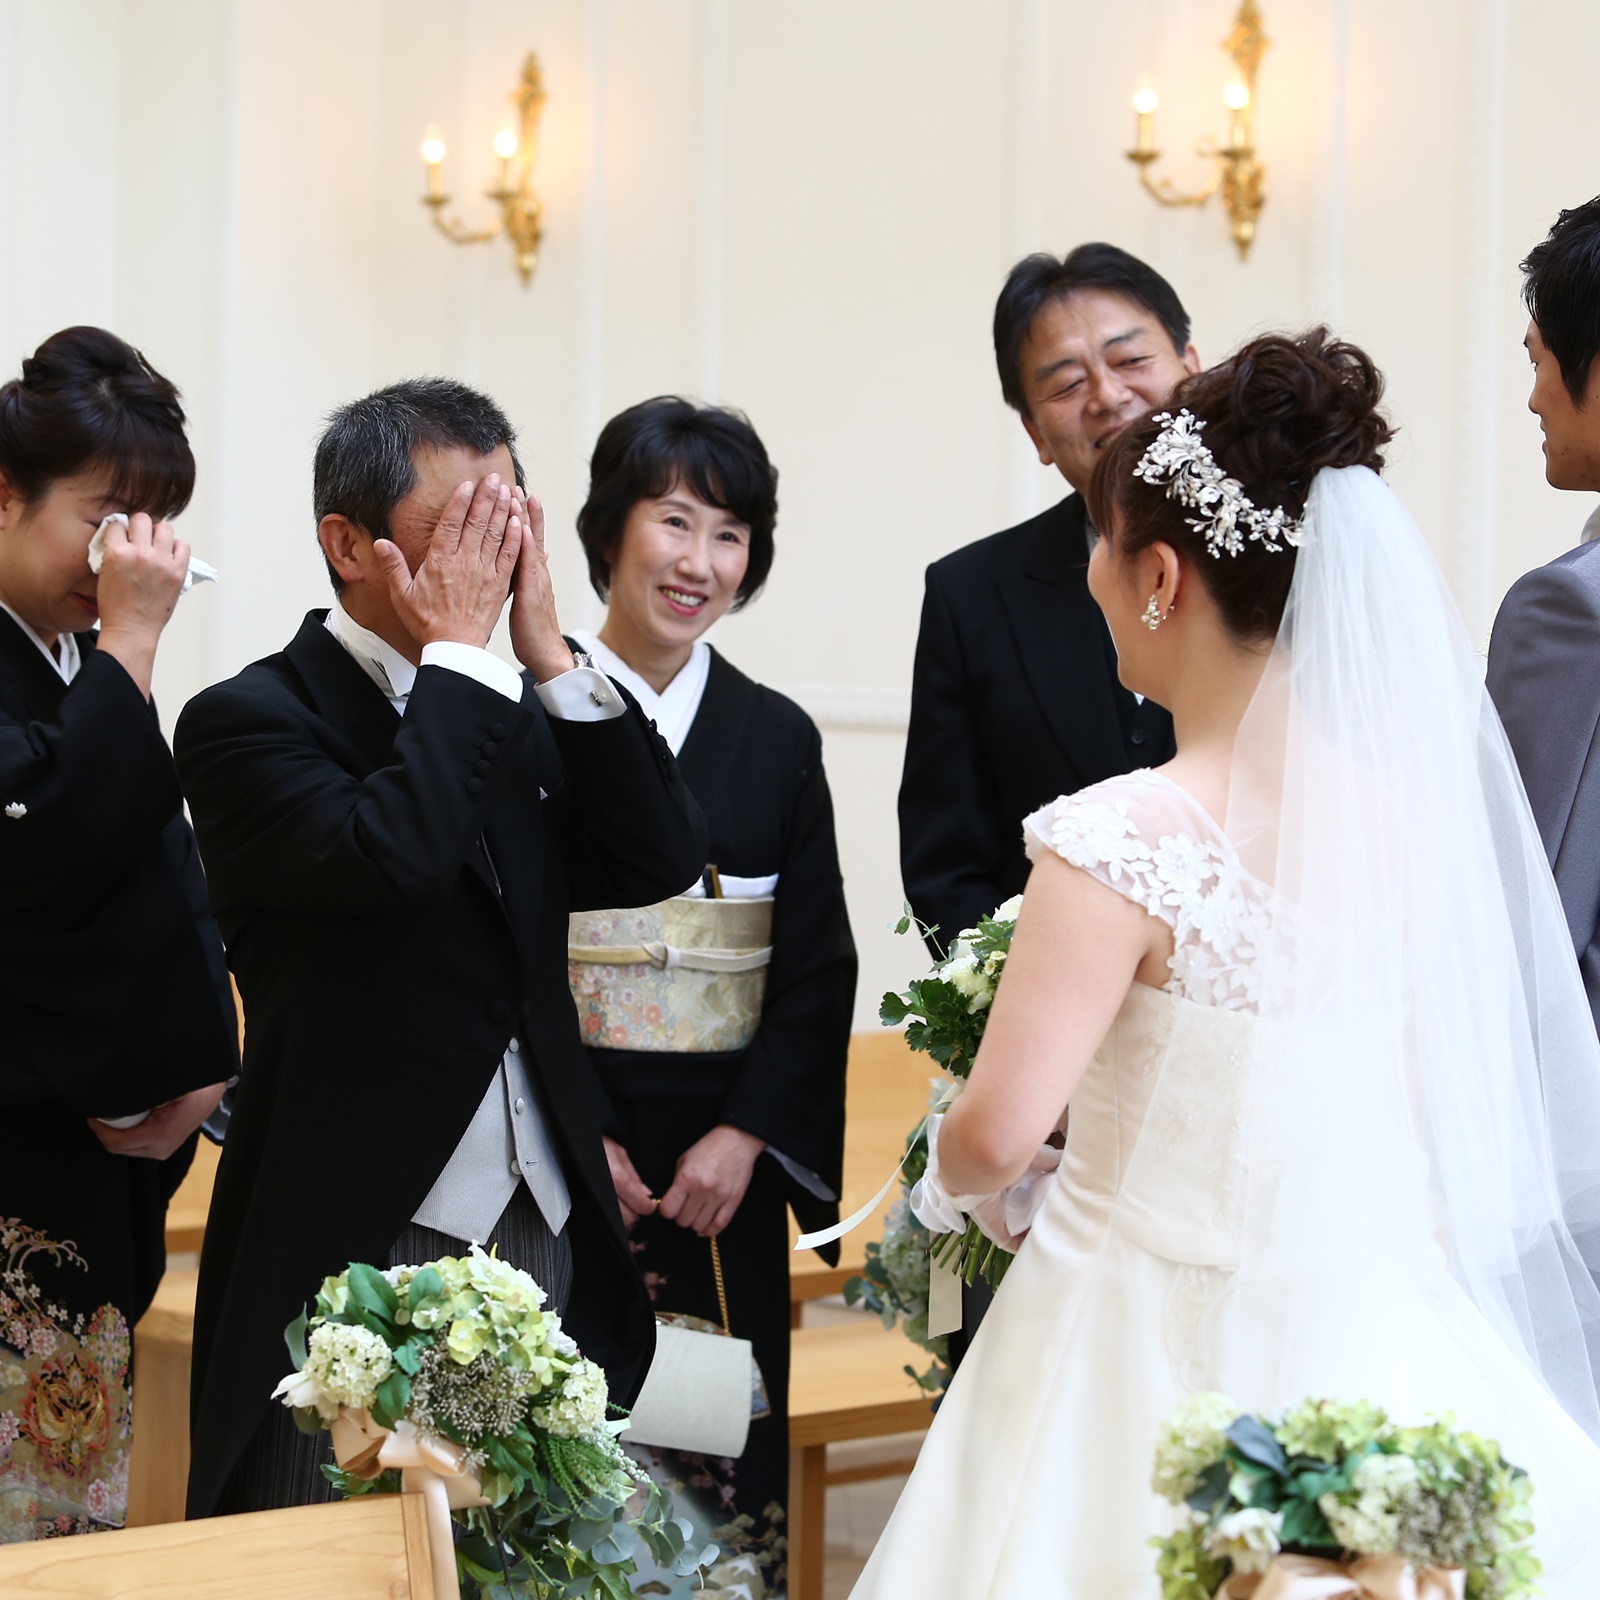 親子だけの時間 ファーストミート ニュース ブログ 公式 ヴィラ アンジェリカ 滋賀 近江八幡の結婚式場